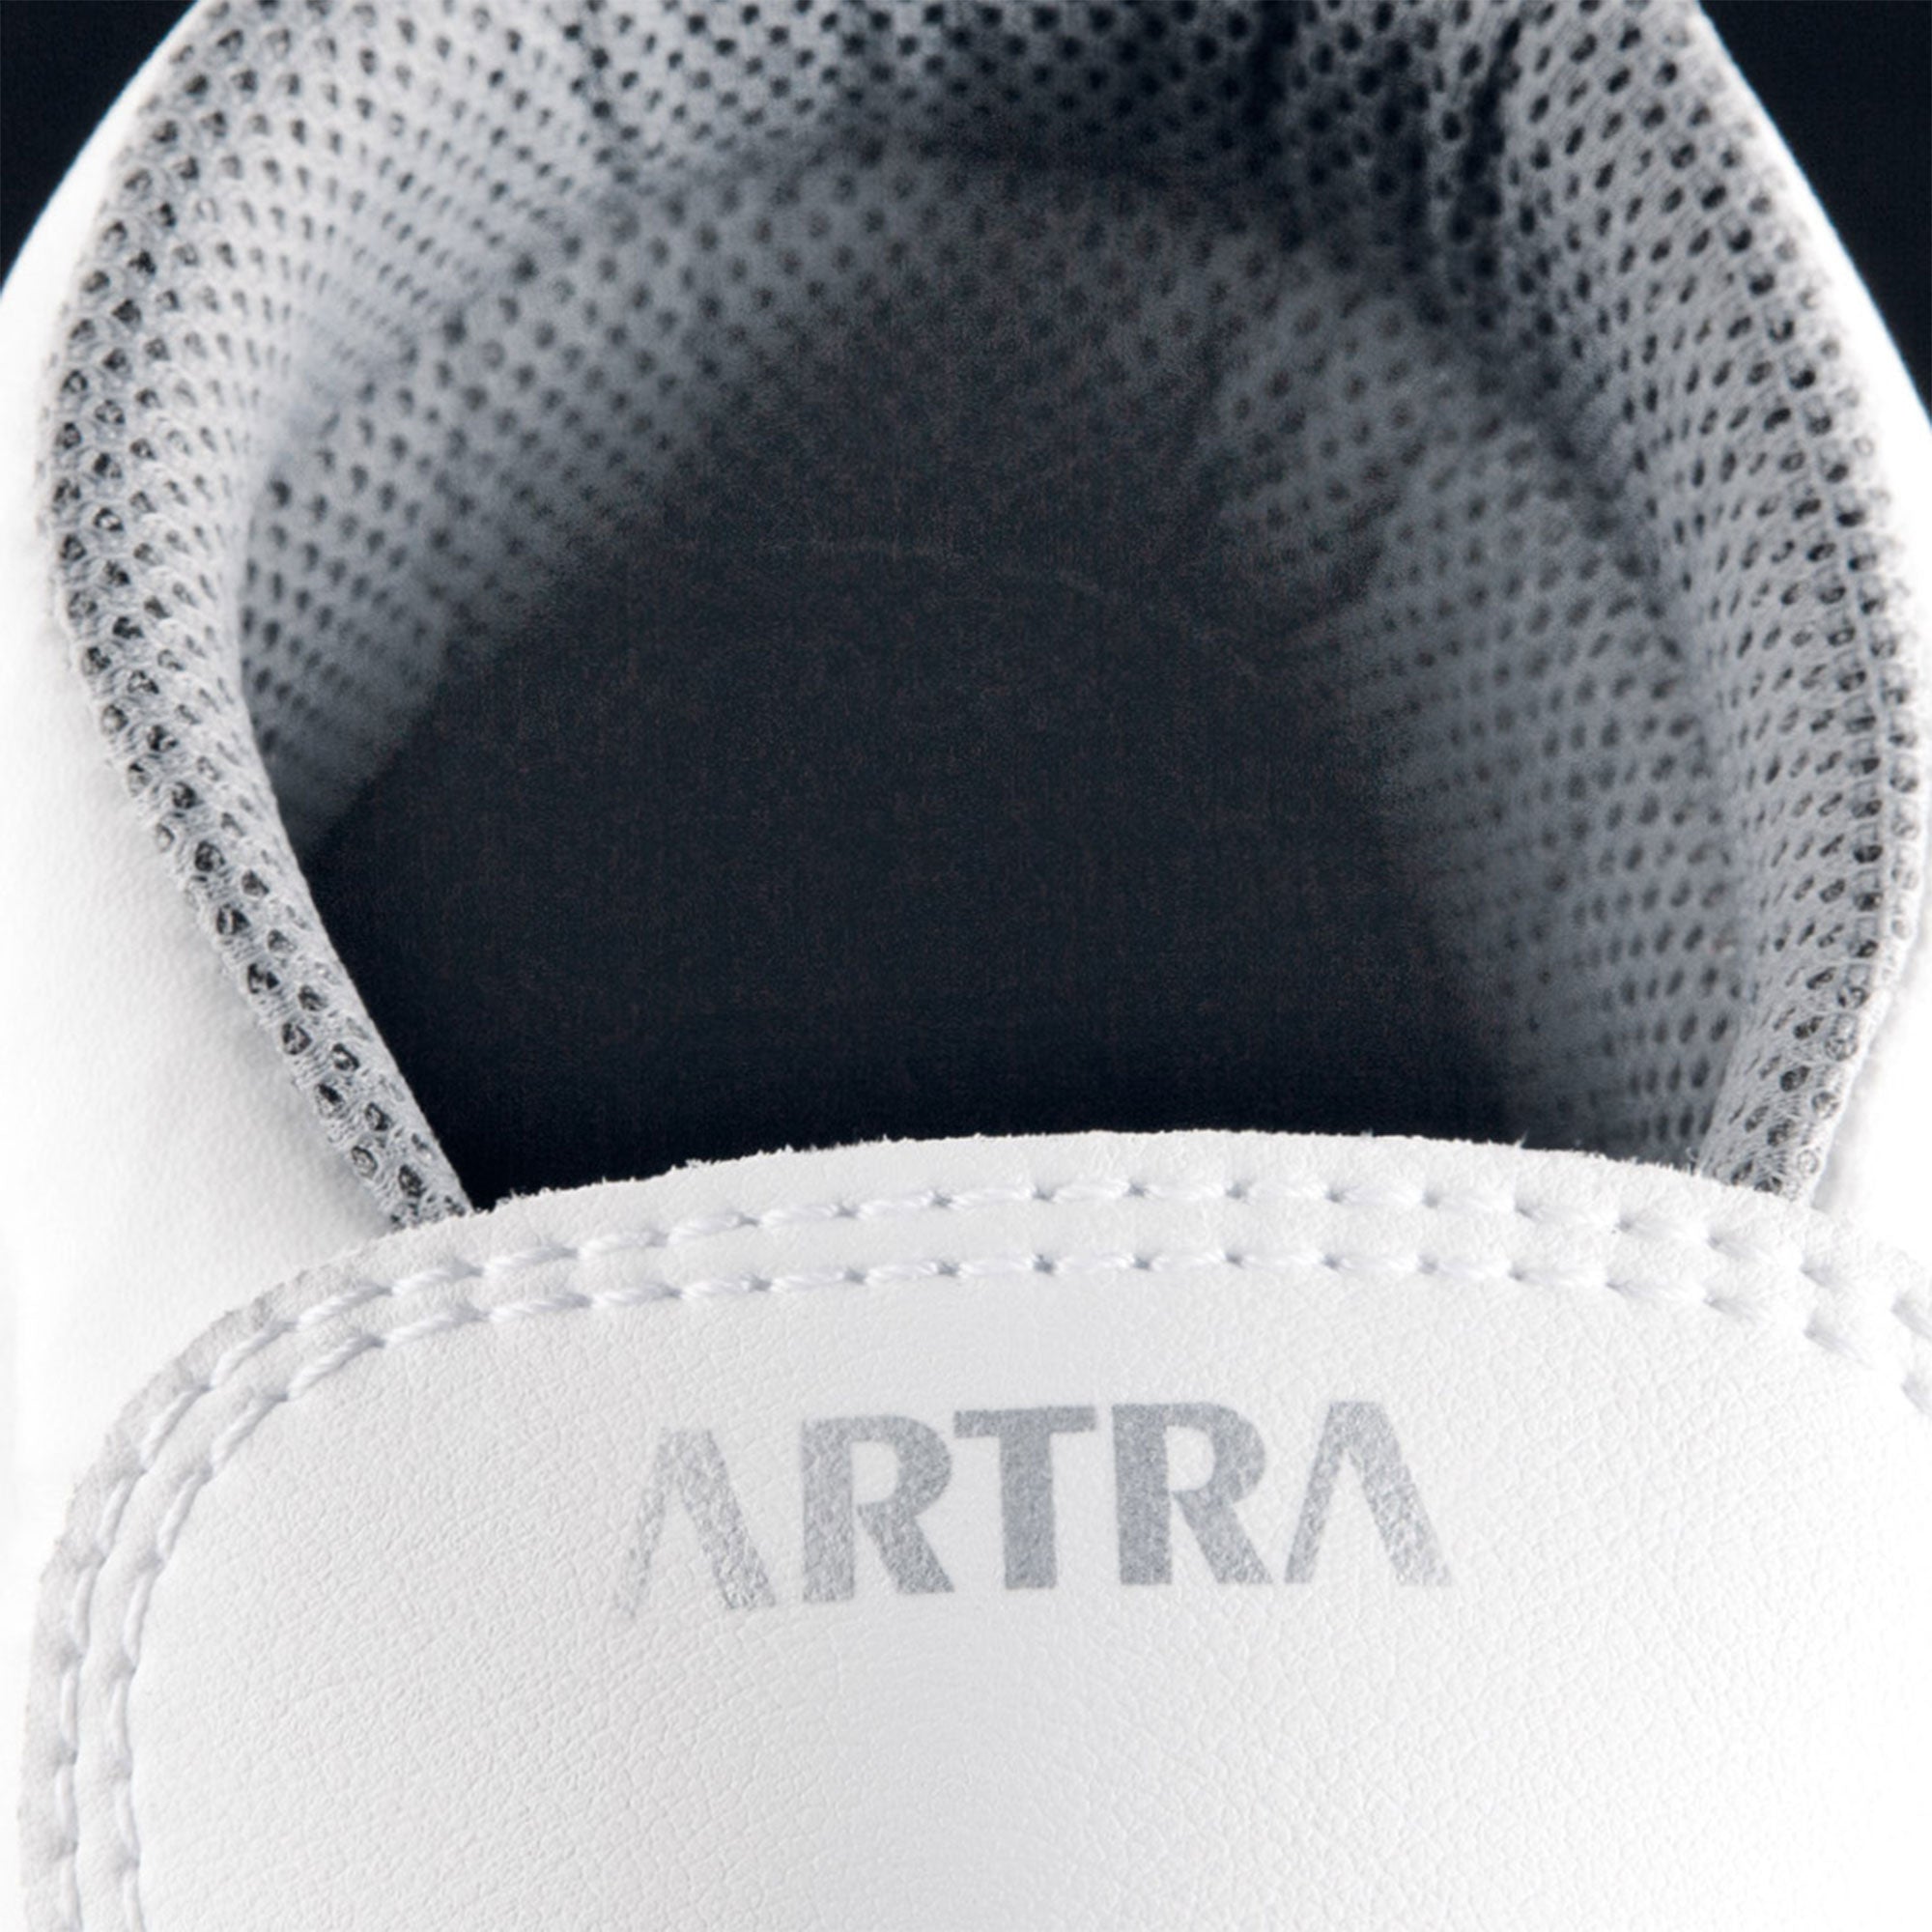 ARTRA Aragonit 842 1010 S3 CI Bijele radne cipele